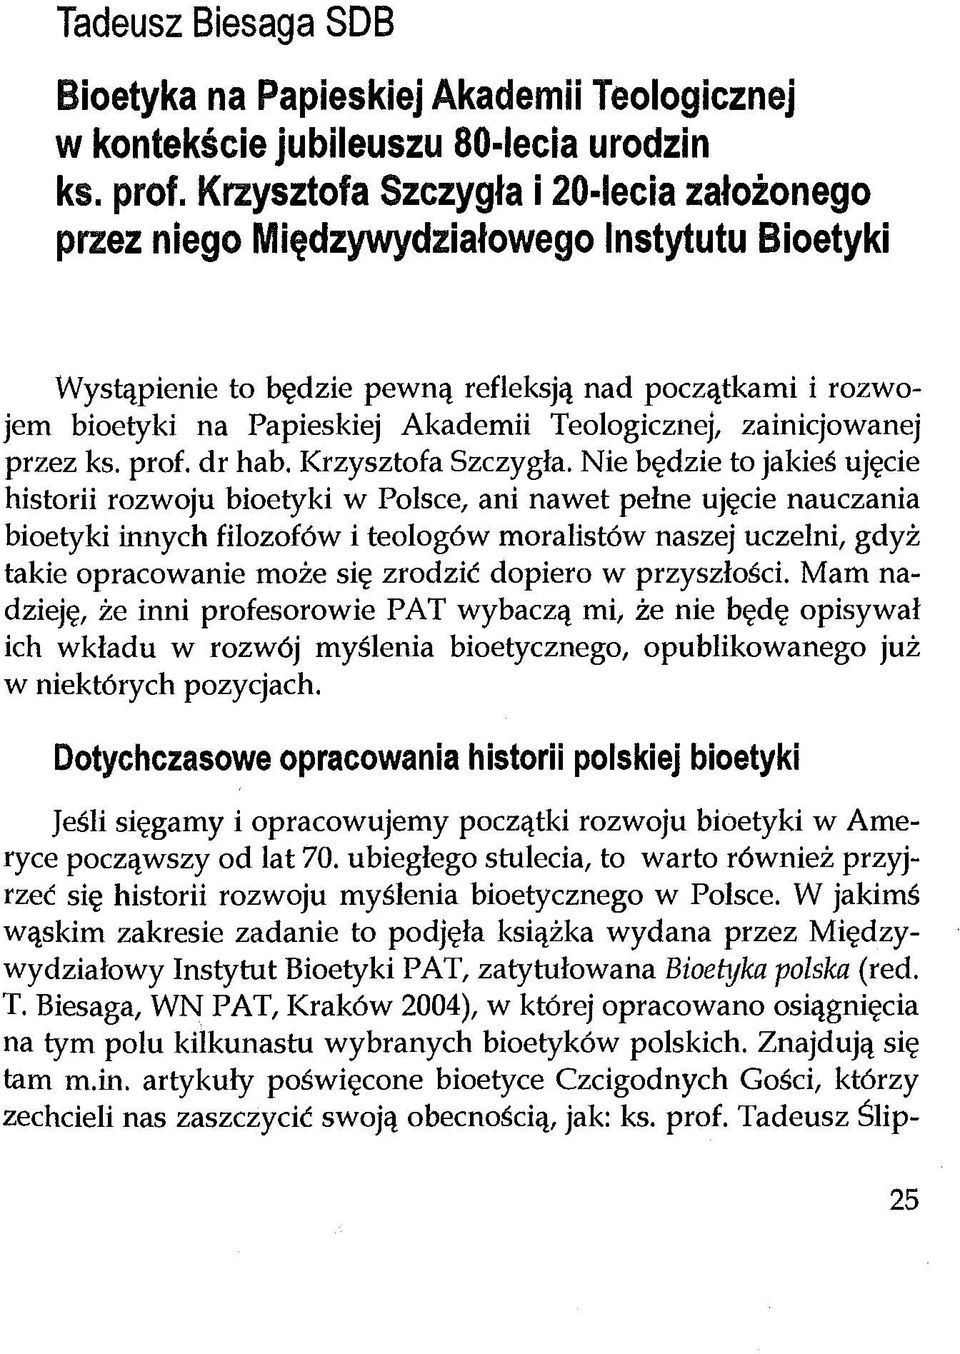 Teologicznej, zainicjowanej przez ks. prof. dr hab. Krzysztofa Szczygła.